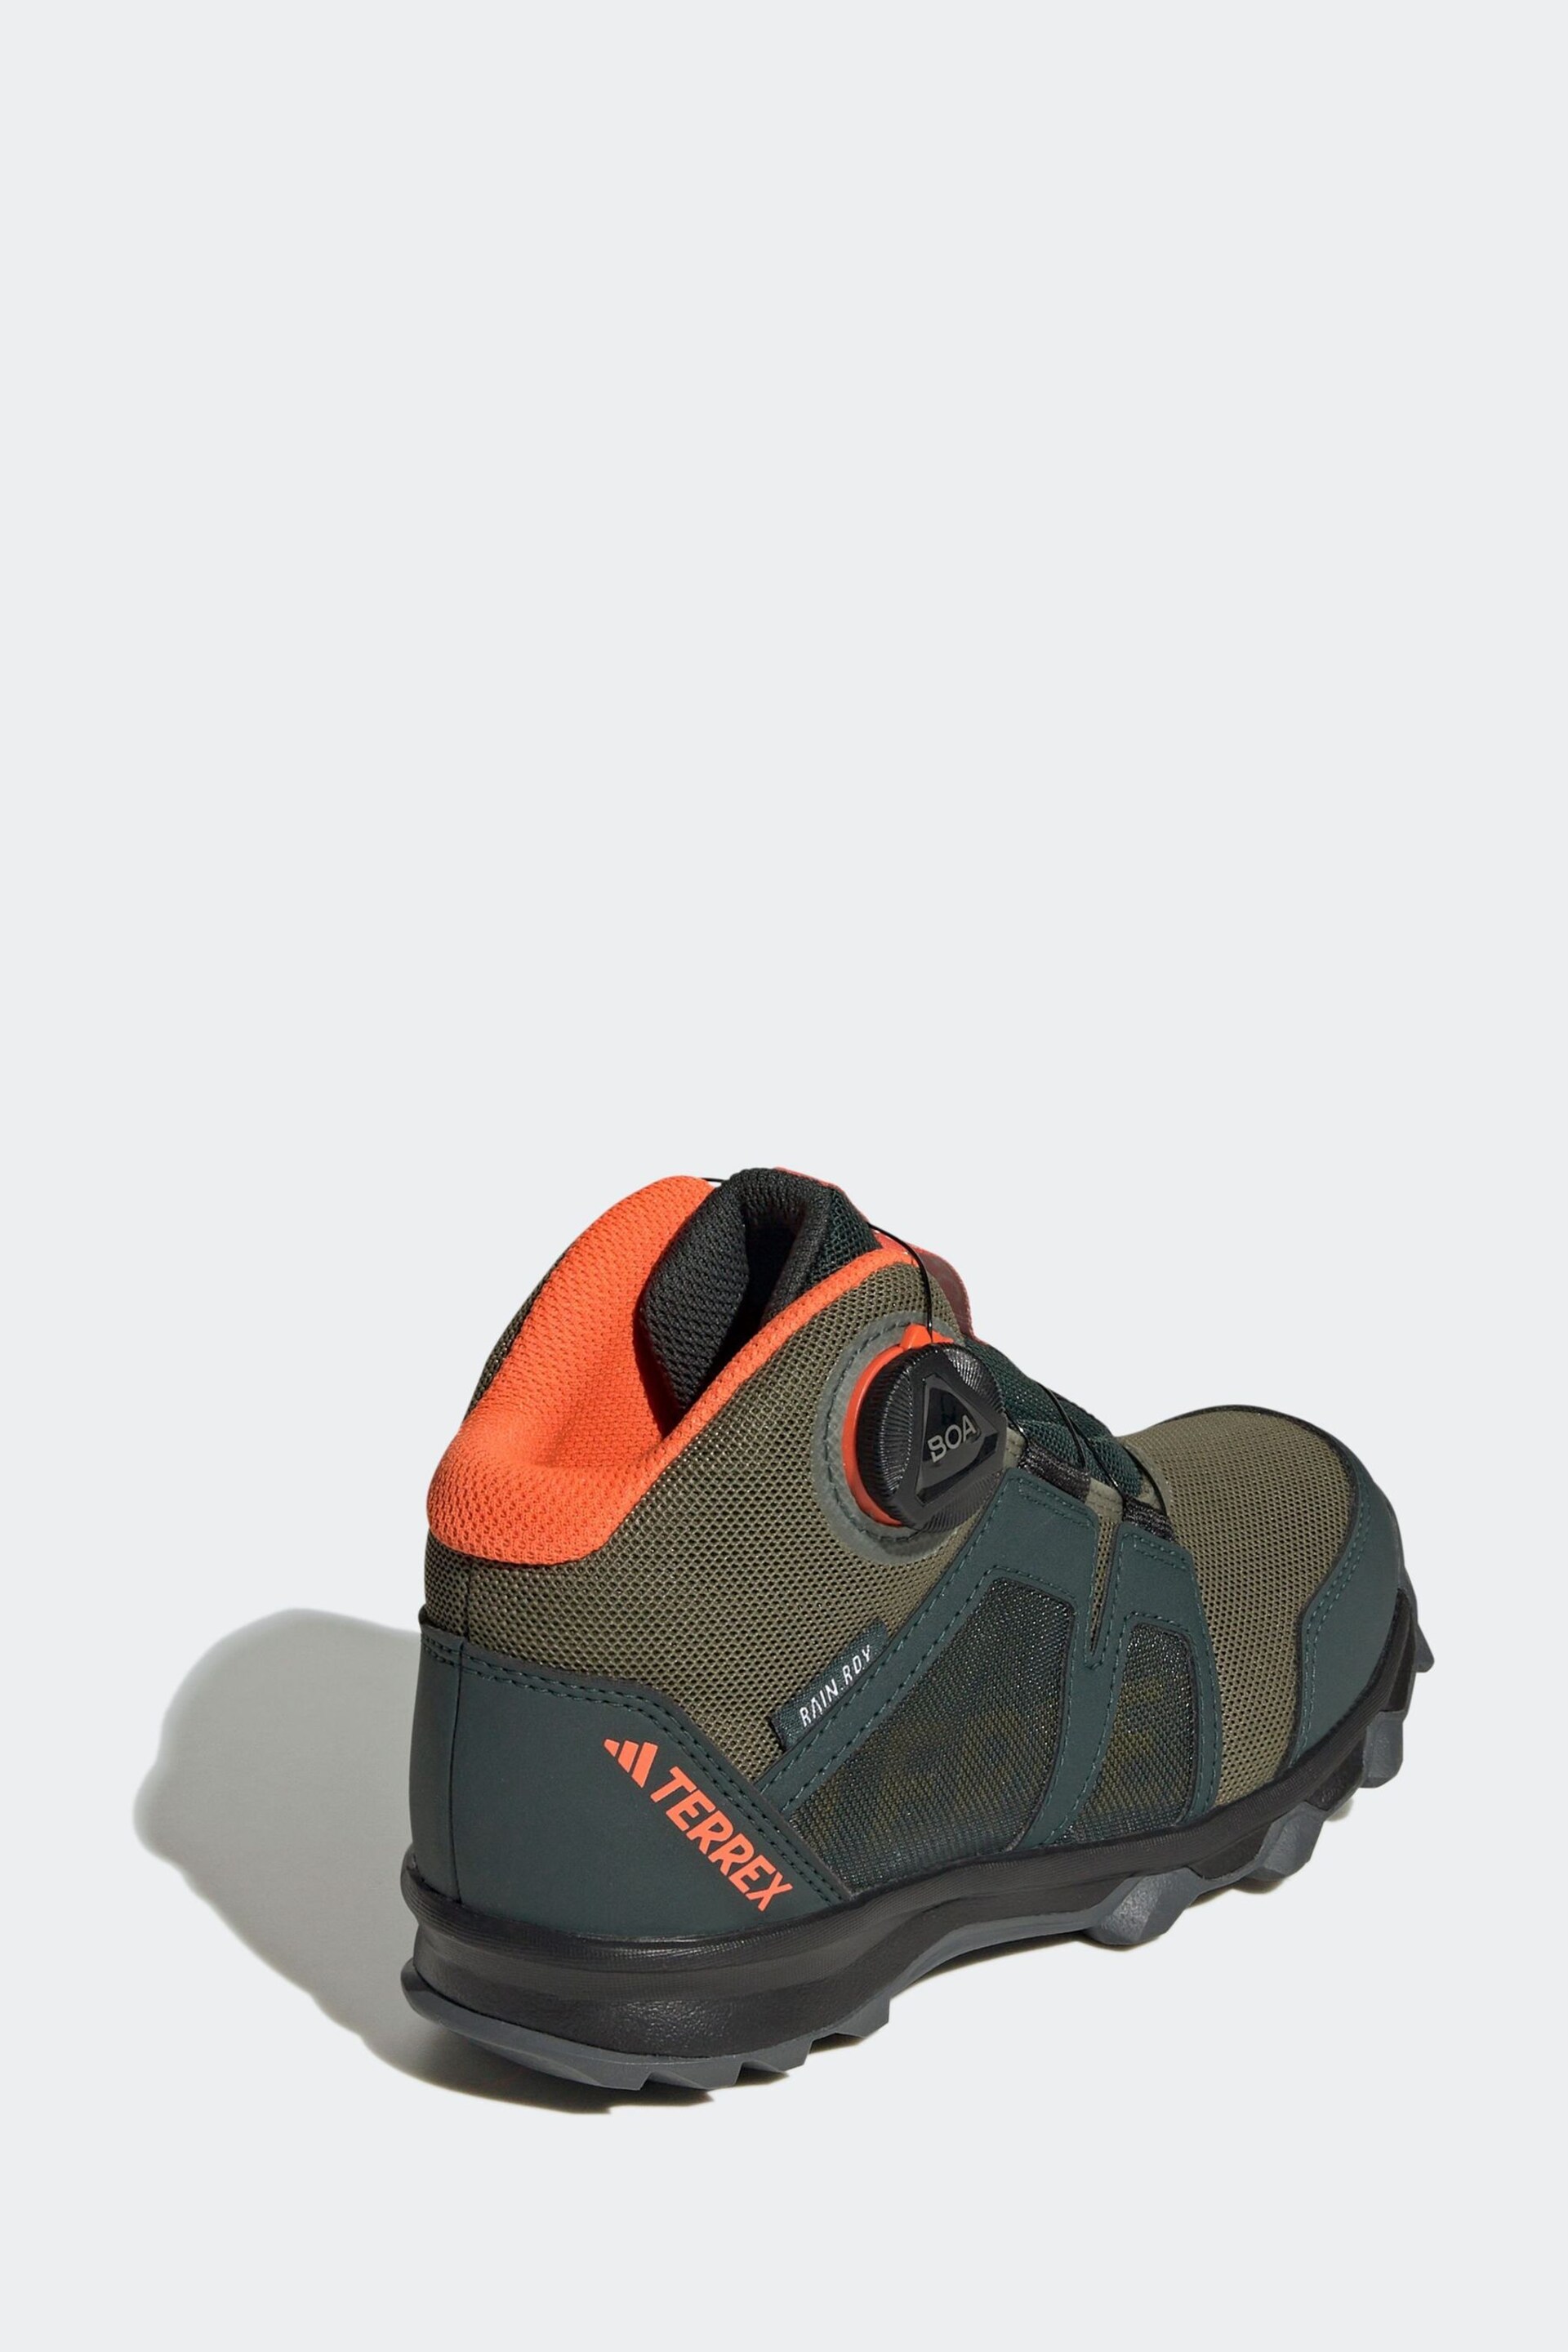 adidas Green Terrex Boa Mid Rain Hiking Boots - Image 4 of 9